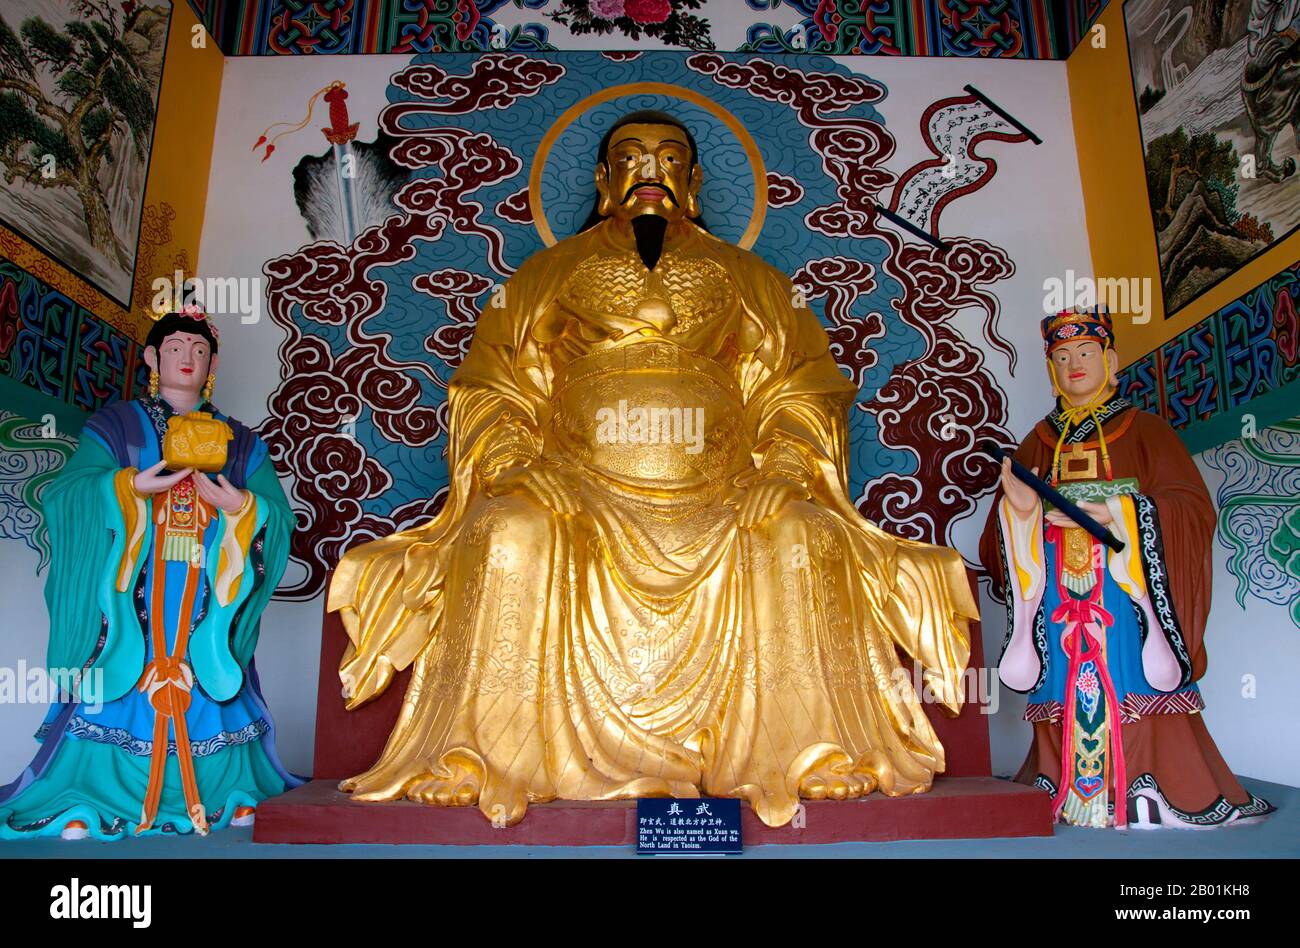 Chine : Xuan Wu (Dieu de la Terre du Nord) dans l'un des pavillons des hommes longs (porte du Dragon), Xishan (collines de l'Ouest), près de Kunming, province du Yunnan. Xuan Wu (le Martial sombre ou le Martial mystérieux), connu à titre posthume comme l'empereur supérieur céleste sombre ou mystérieux (Xuan Tian Shang Di), ainsi que le Grand empereur guerrier vrai (Zhen Wu Da Di), communément appelé Empereur du Nord (BEI Di) ou Empereur Seigneur (Di Gong), il est l'une des divinités taoïstes de rang supérieur, et l'une des divinités les plus vénérées en Chine. Xuan Wu est vénéré comme un dieu puissant, capable de contrôler les éléments. Banque D'Images